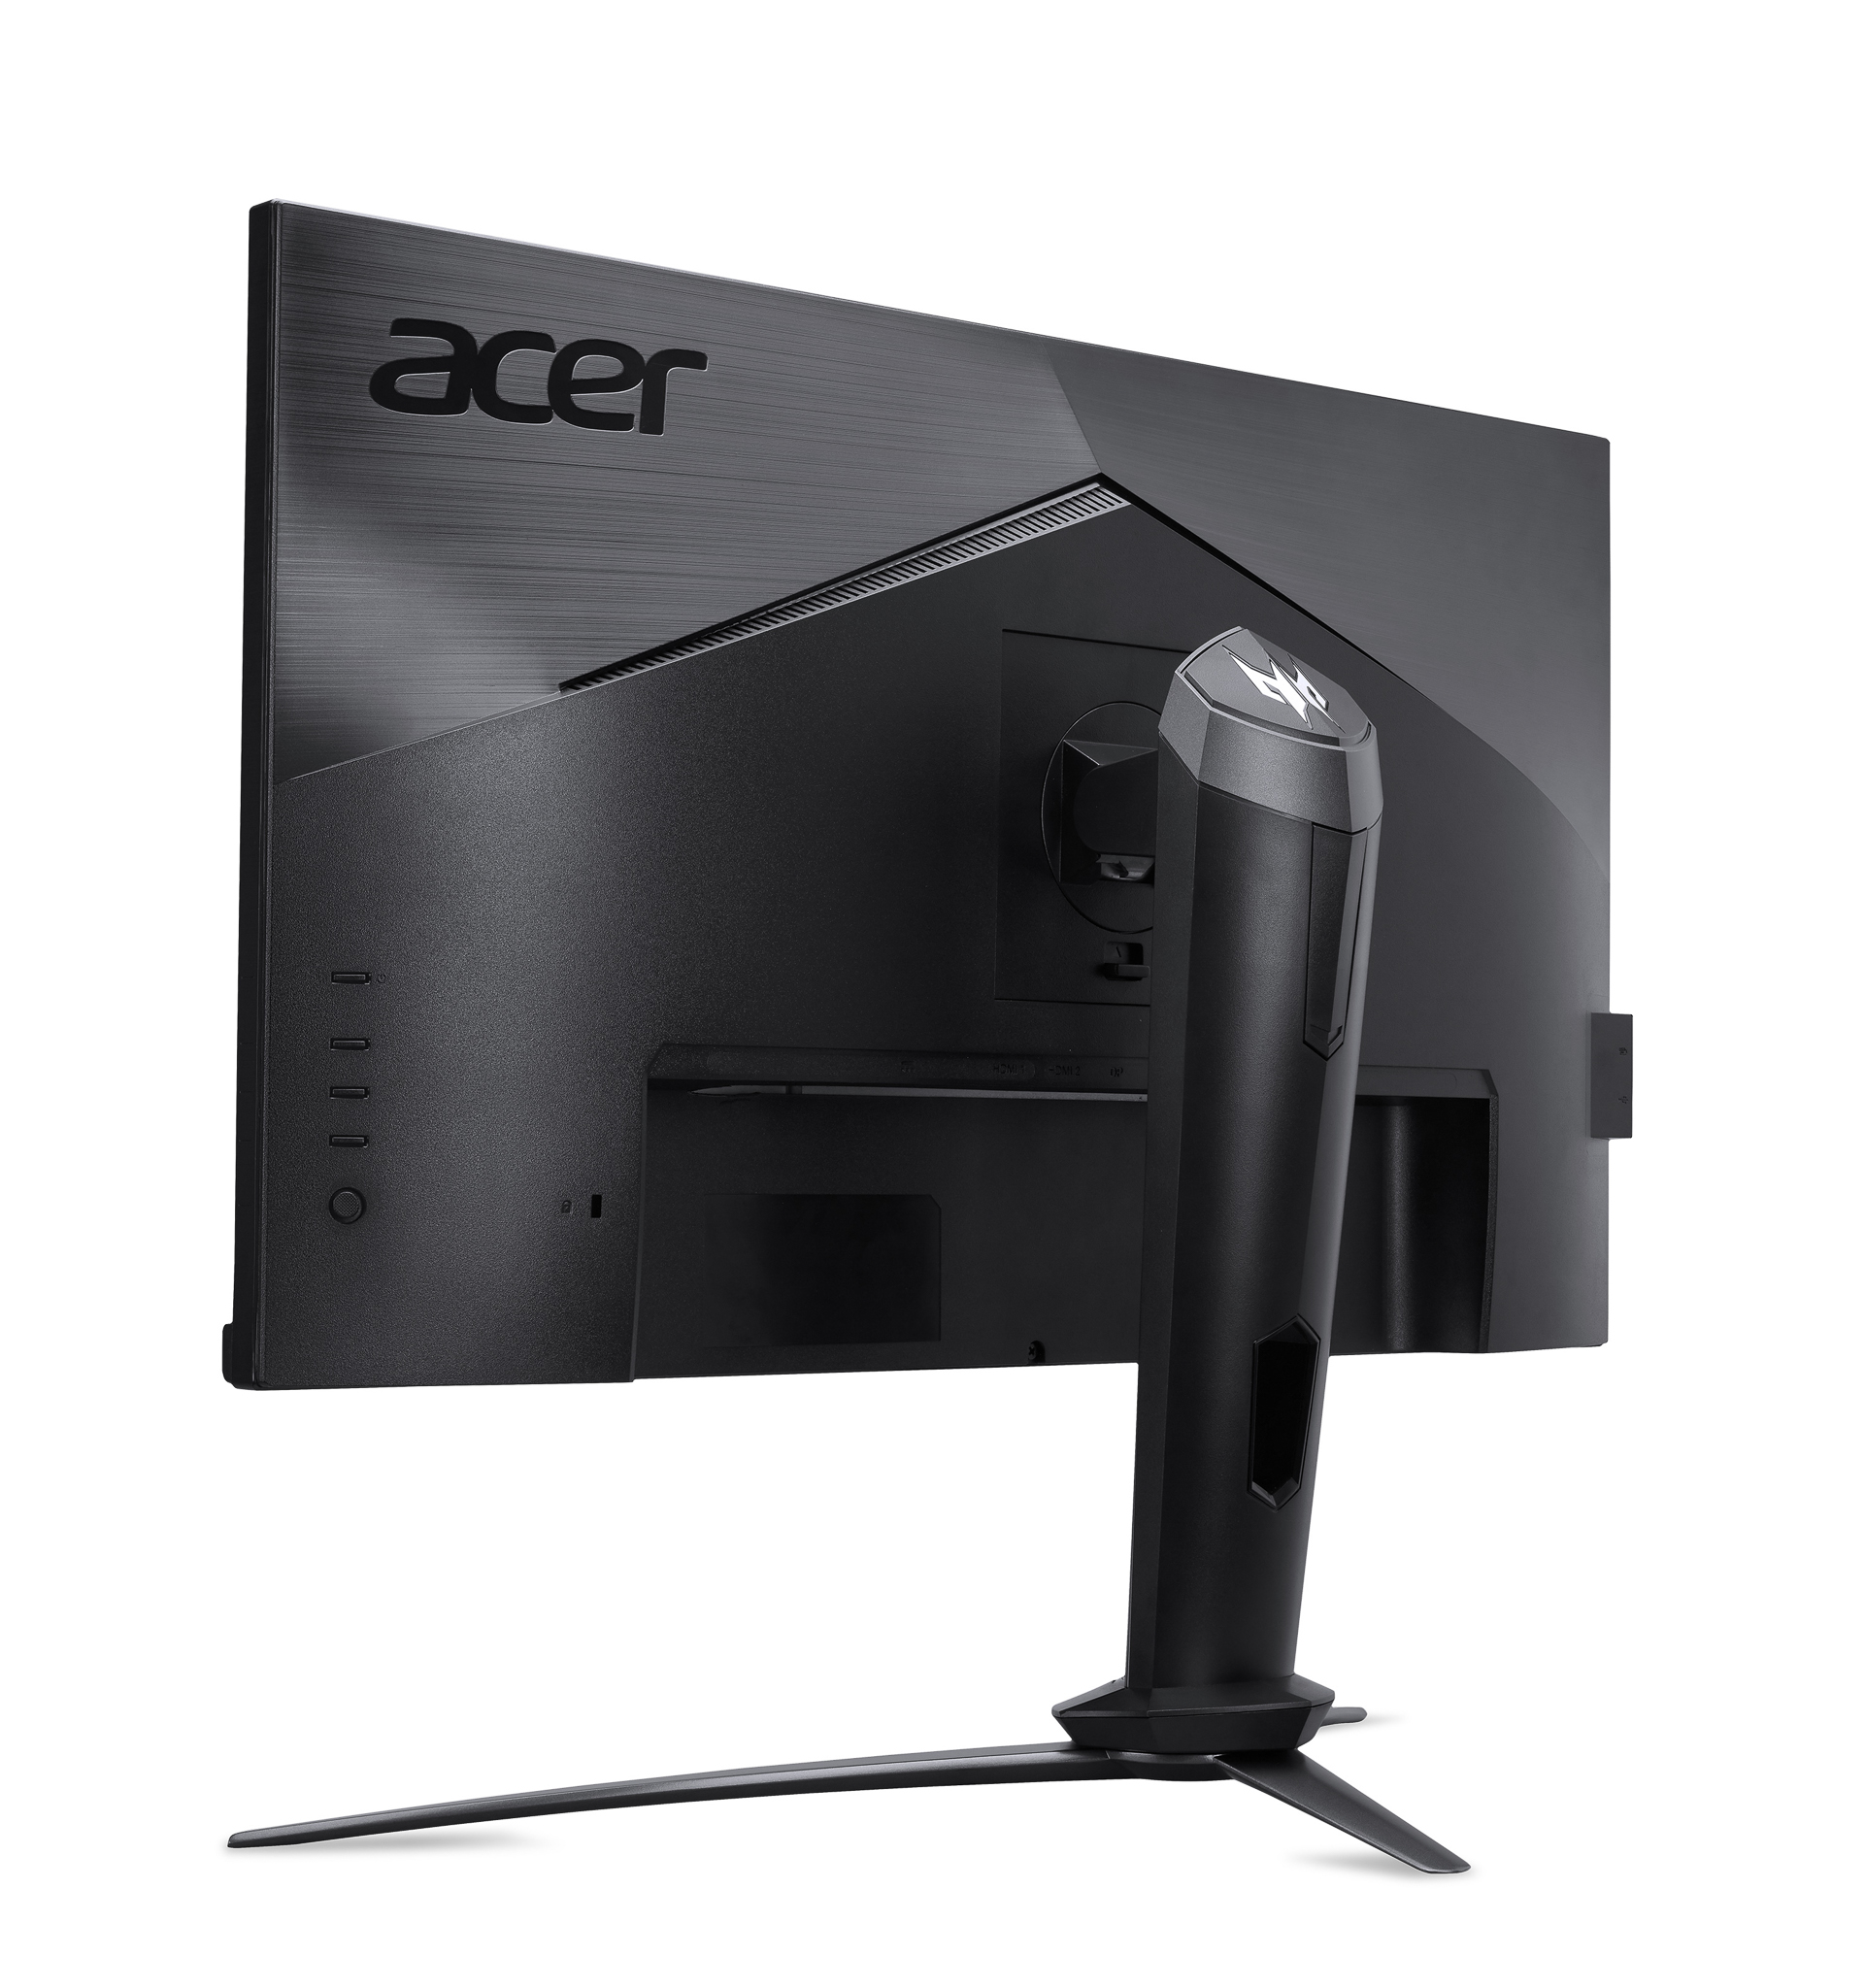 Acer mở rộng dải màn hình Predator với 3 mẫu màn hình HDR mới